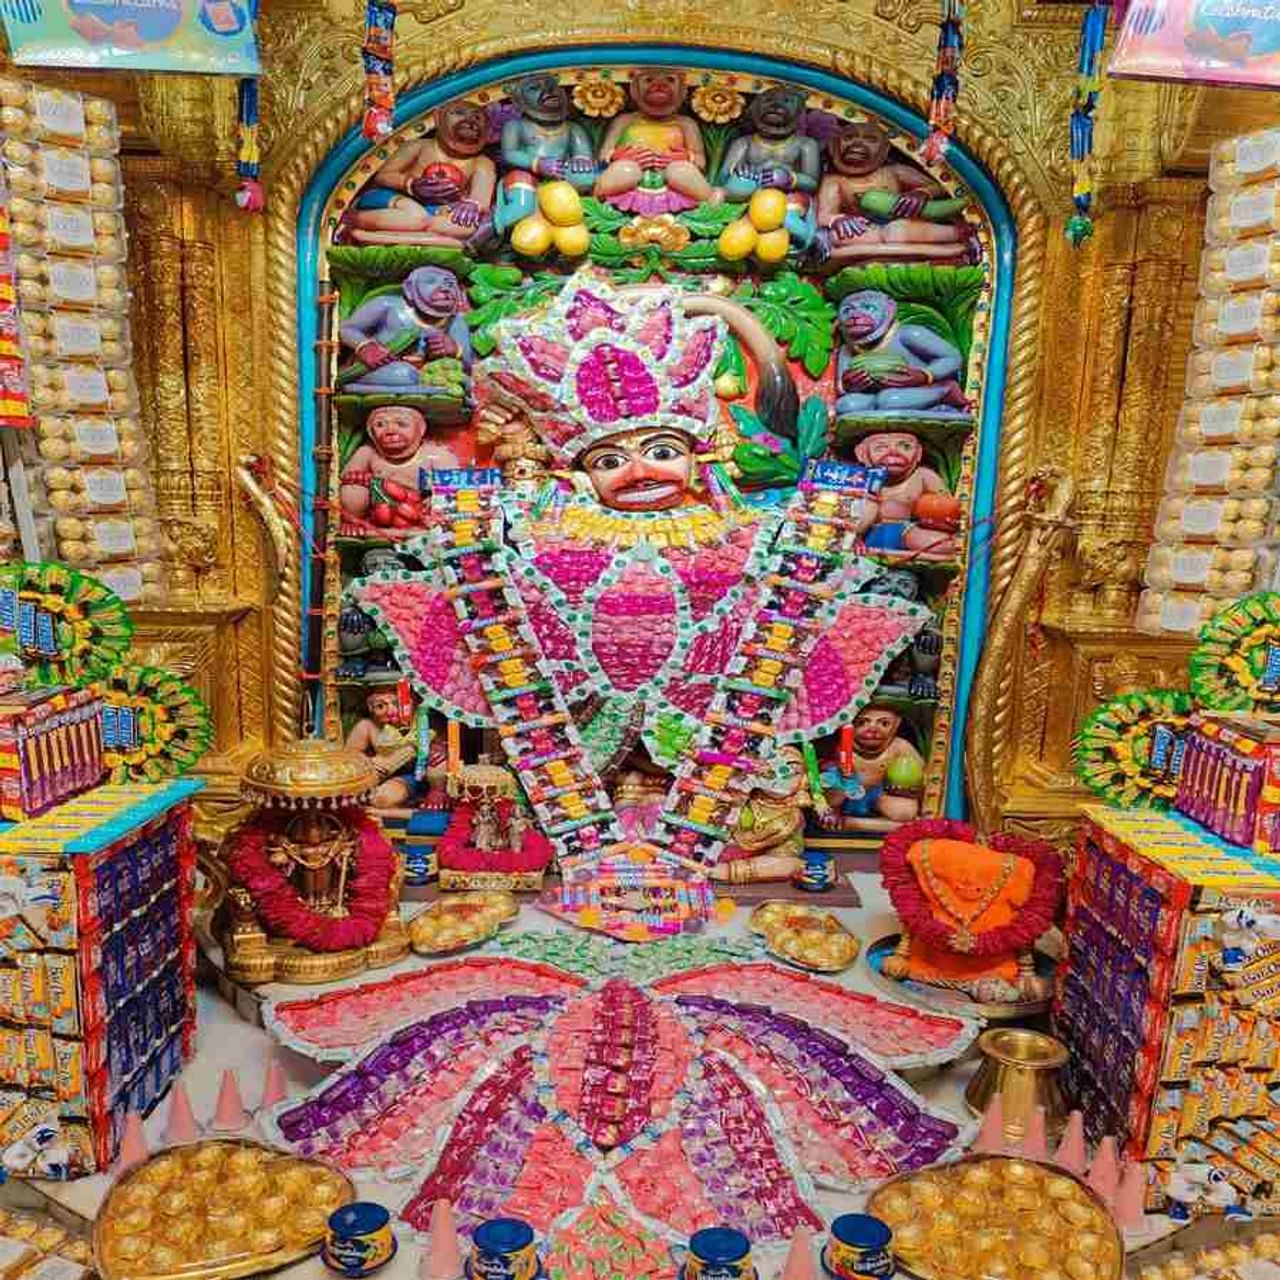 બોટાદ જિલ્લાના સાળંગપુરમાં આવેલા કષ્ટભંજન હનુમાનજી મંદિરમાં પવિત્ર શ્રાવણ માસ નિમિત્તે 6 ઓગસ્ટ શનિવારના રોજ વિશેષ શણગાર કરવામાં આવ્યો છે. ભગવાનને ચોકલેટના વિશેષ વાઘા પહેરાવવામાં આવ્યા છે. 
